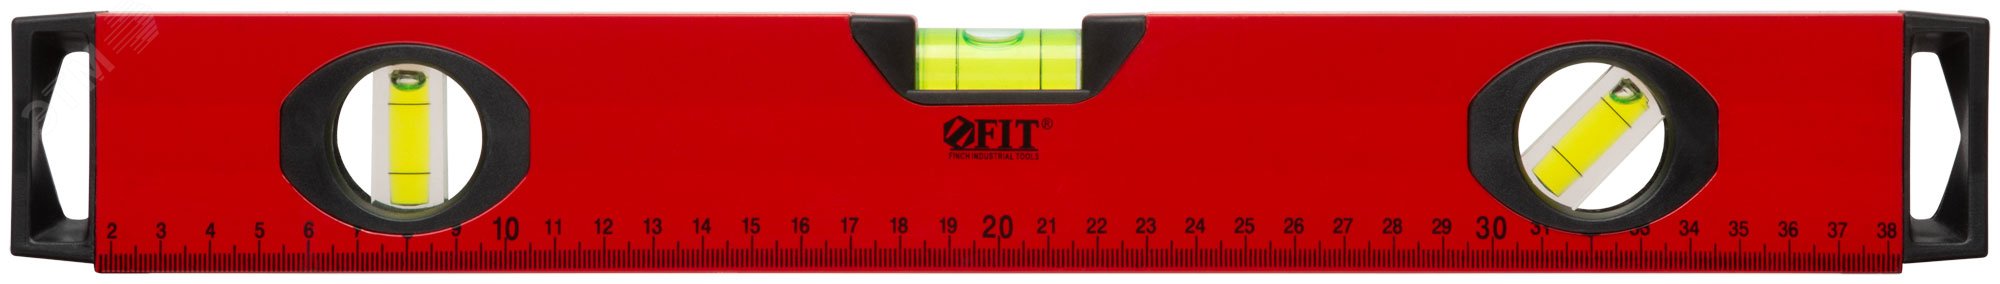 Уровень ''Бизон'', 3 глазка, красный корпус, магнитная полоса, ручки, шкала 400 мм 18141 FIT - превью